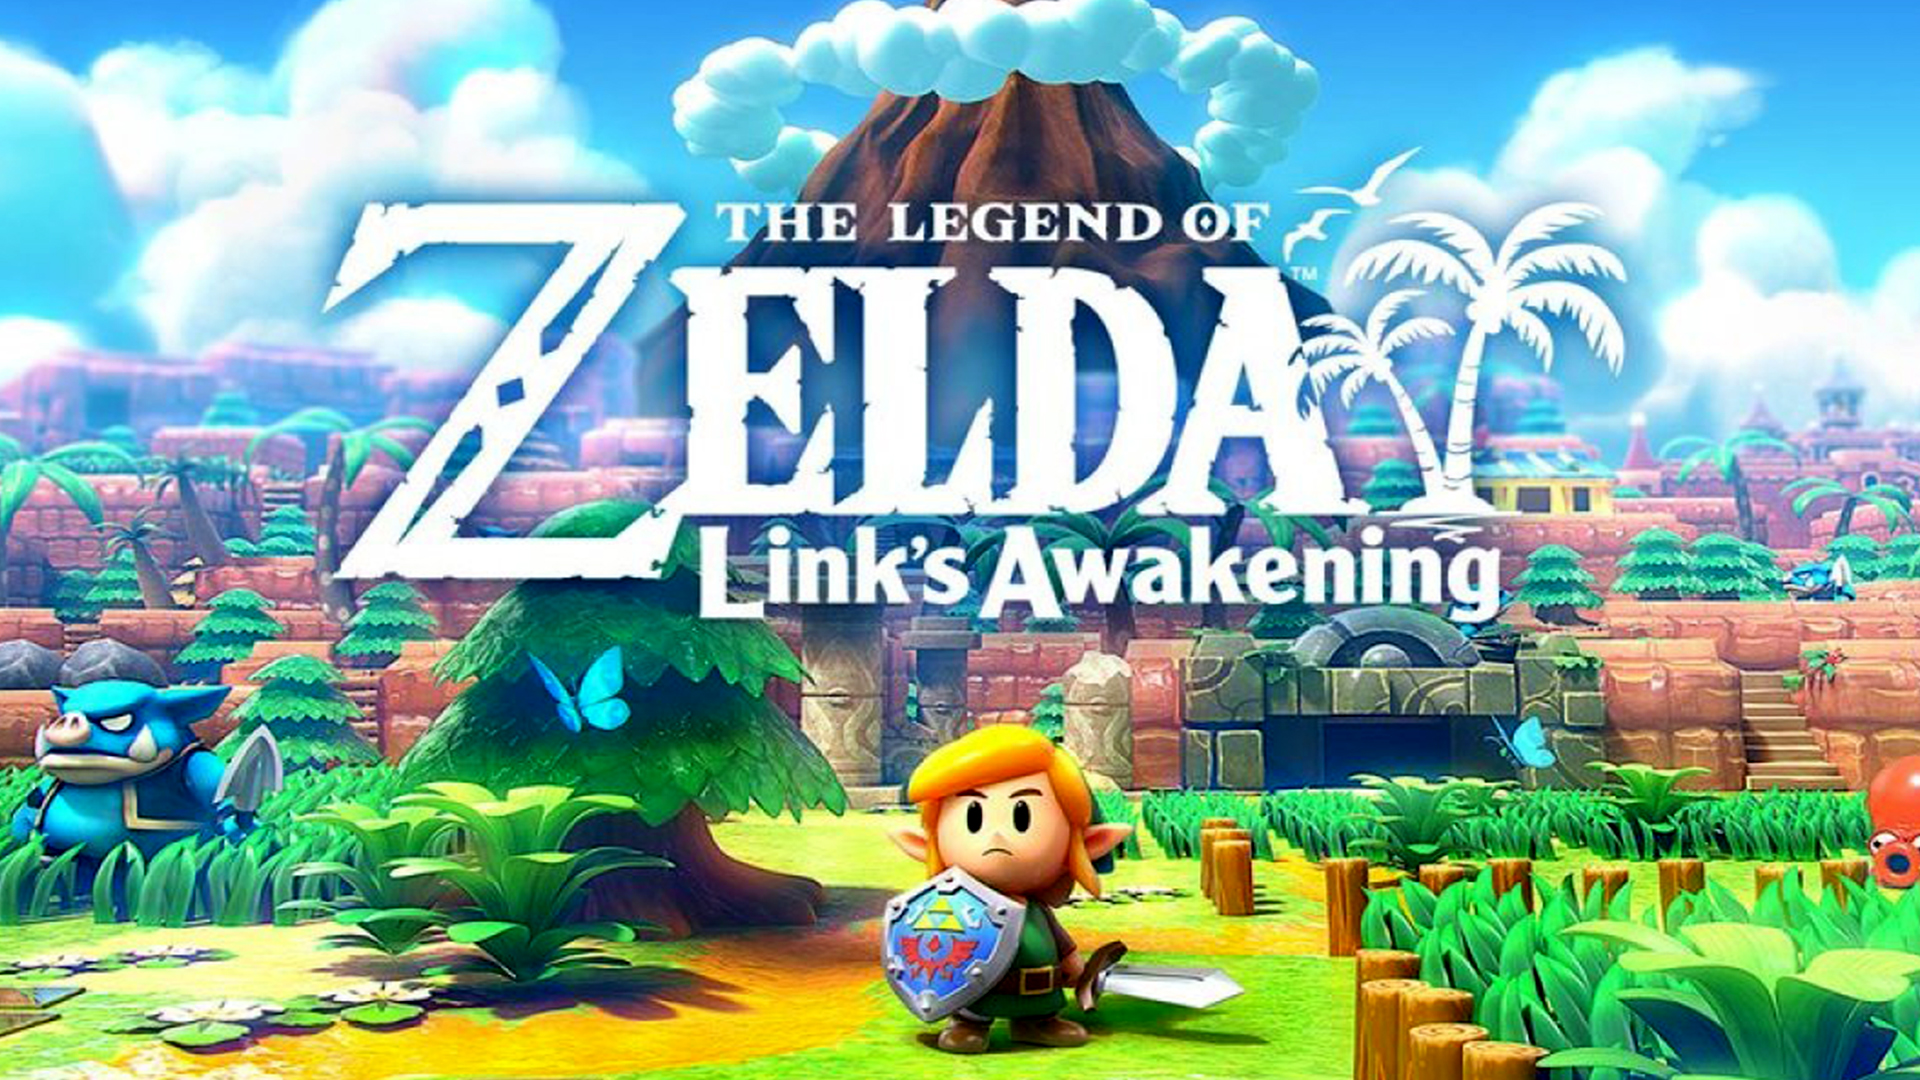 The Legend of Zelda: Links Awakening + The Legend of Zelda: Breath